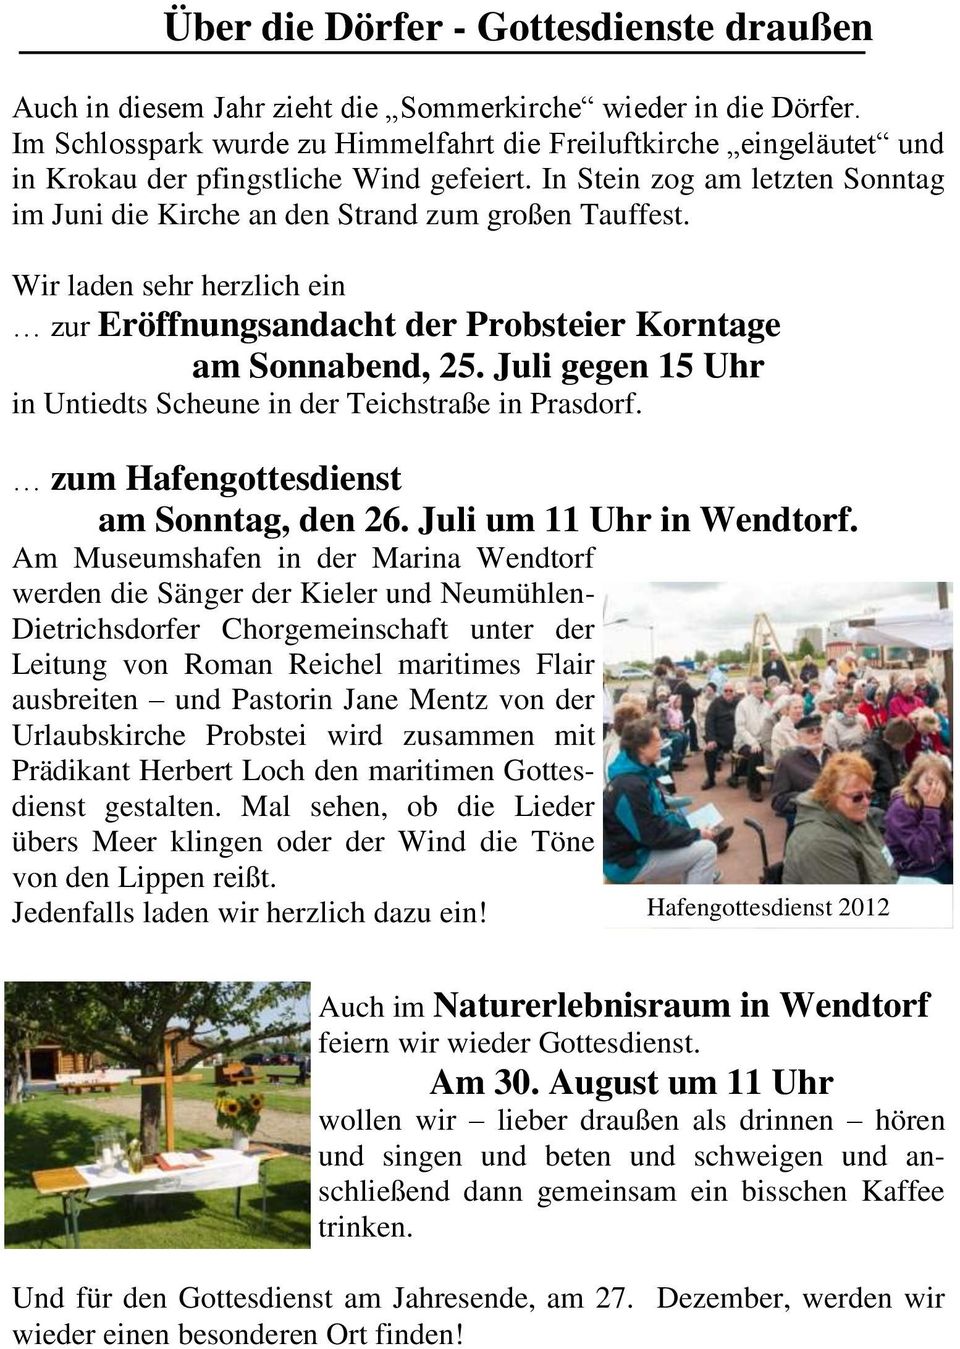 Wir laden sehr herzlich ein zur Eröffnungsandacht der Probsteier Korntage am Sonnabend, 25. Juli gegen 15 Uhr in Untiedts Scheune in der Teichstraße in Prasdorf.